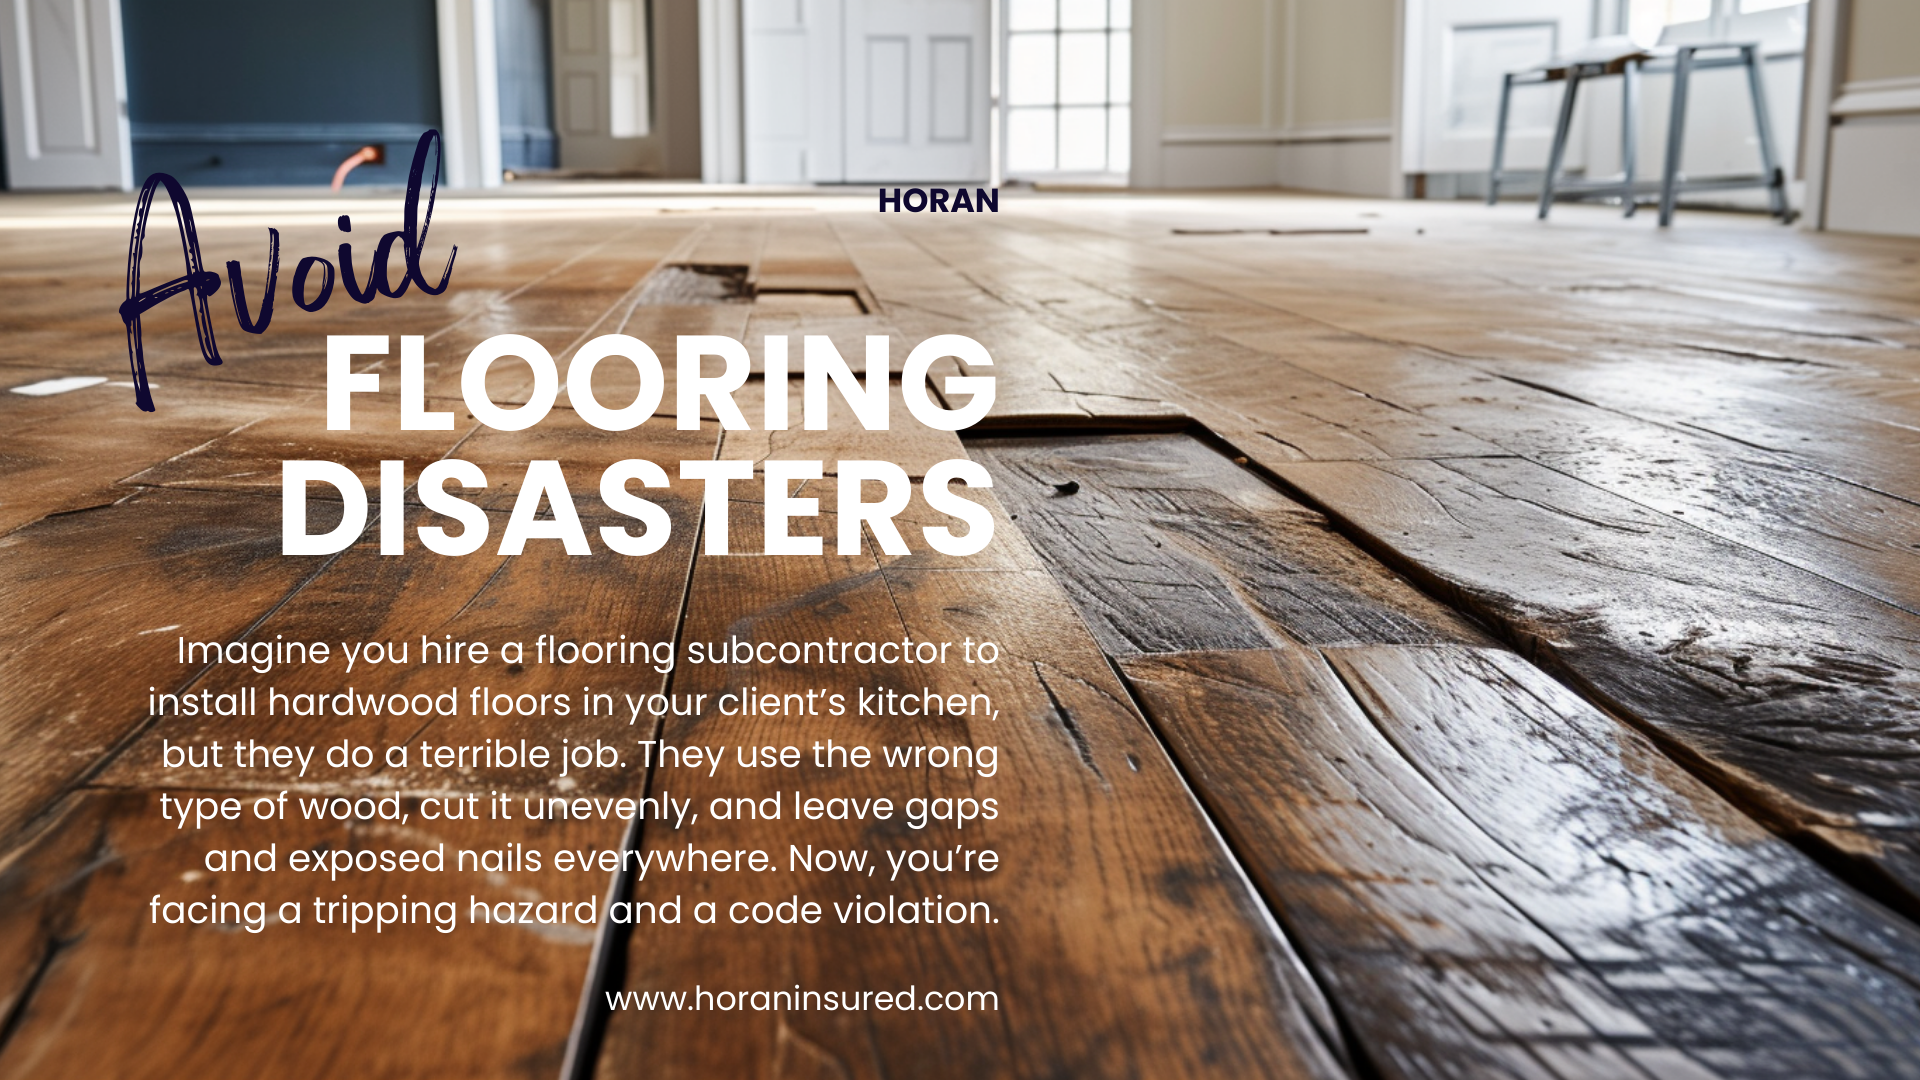 Avoid subcontracting nightmares like flooring disasters.